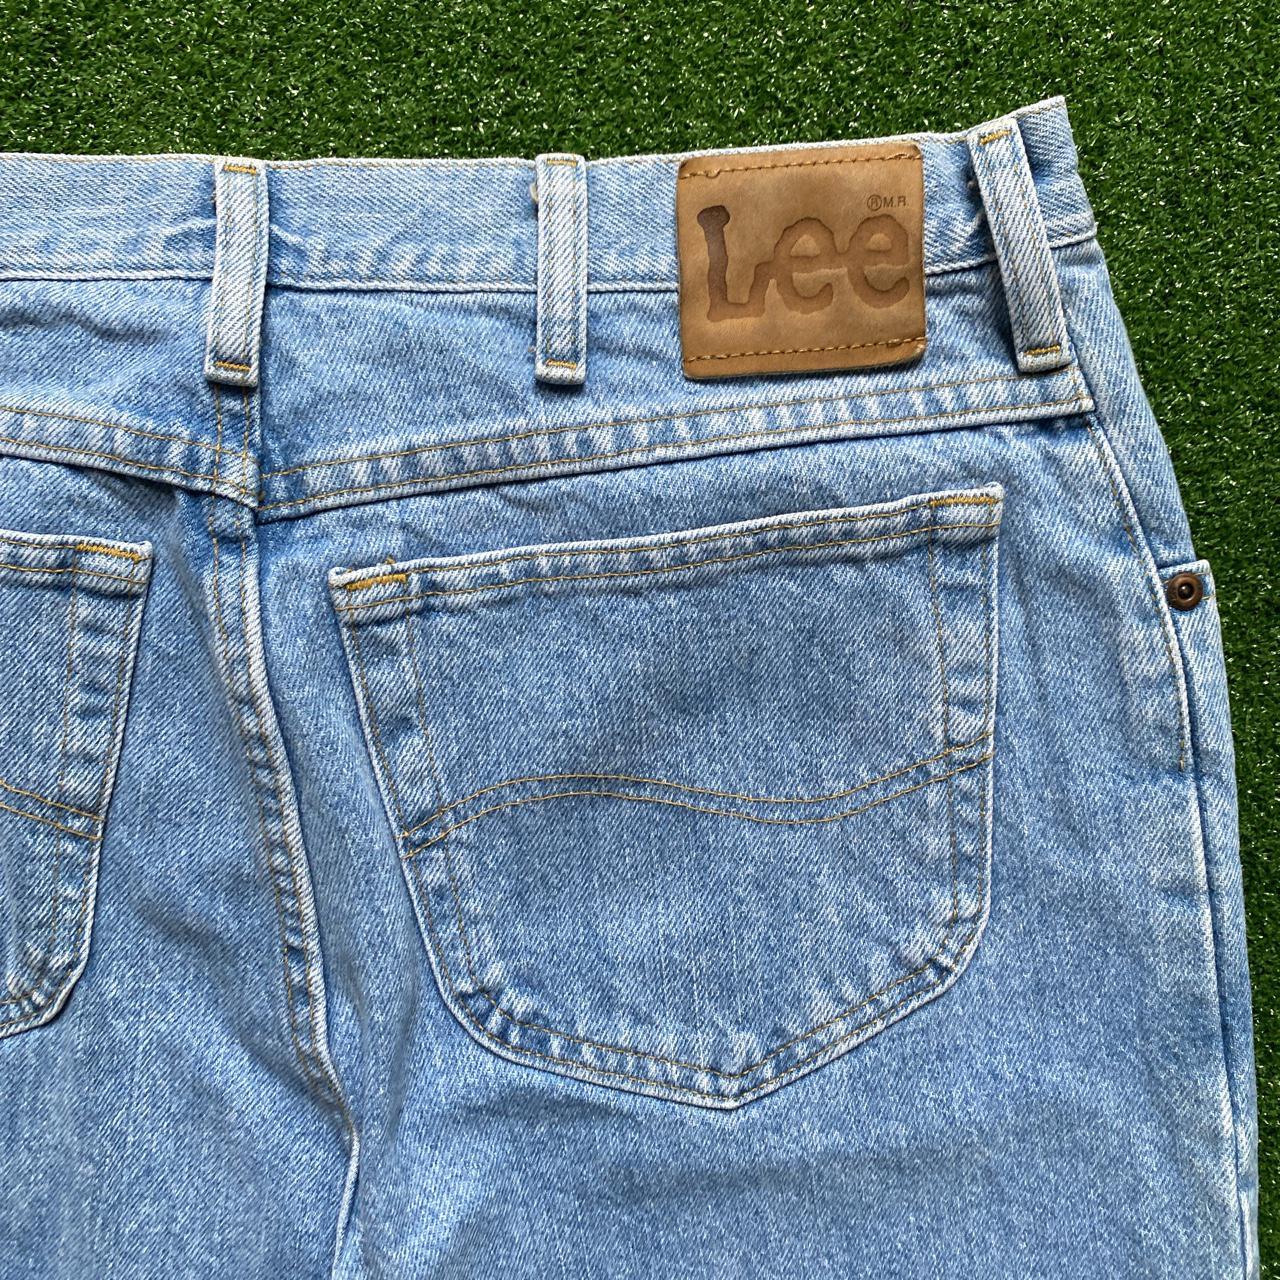 LEE Light Wash Denim Jeans • mens jeans 34x32 (not - Depop